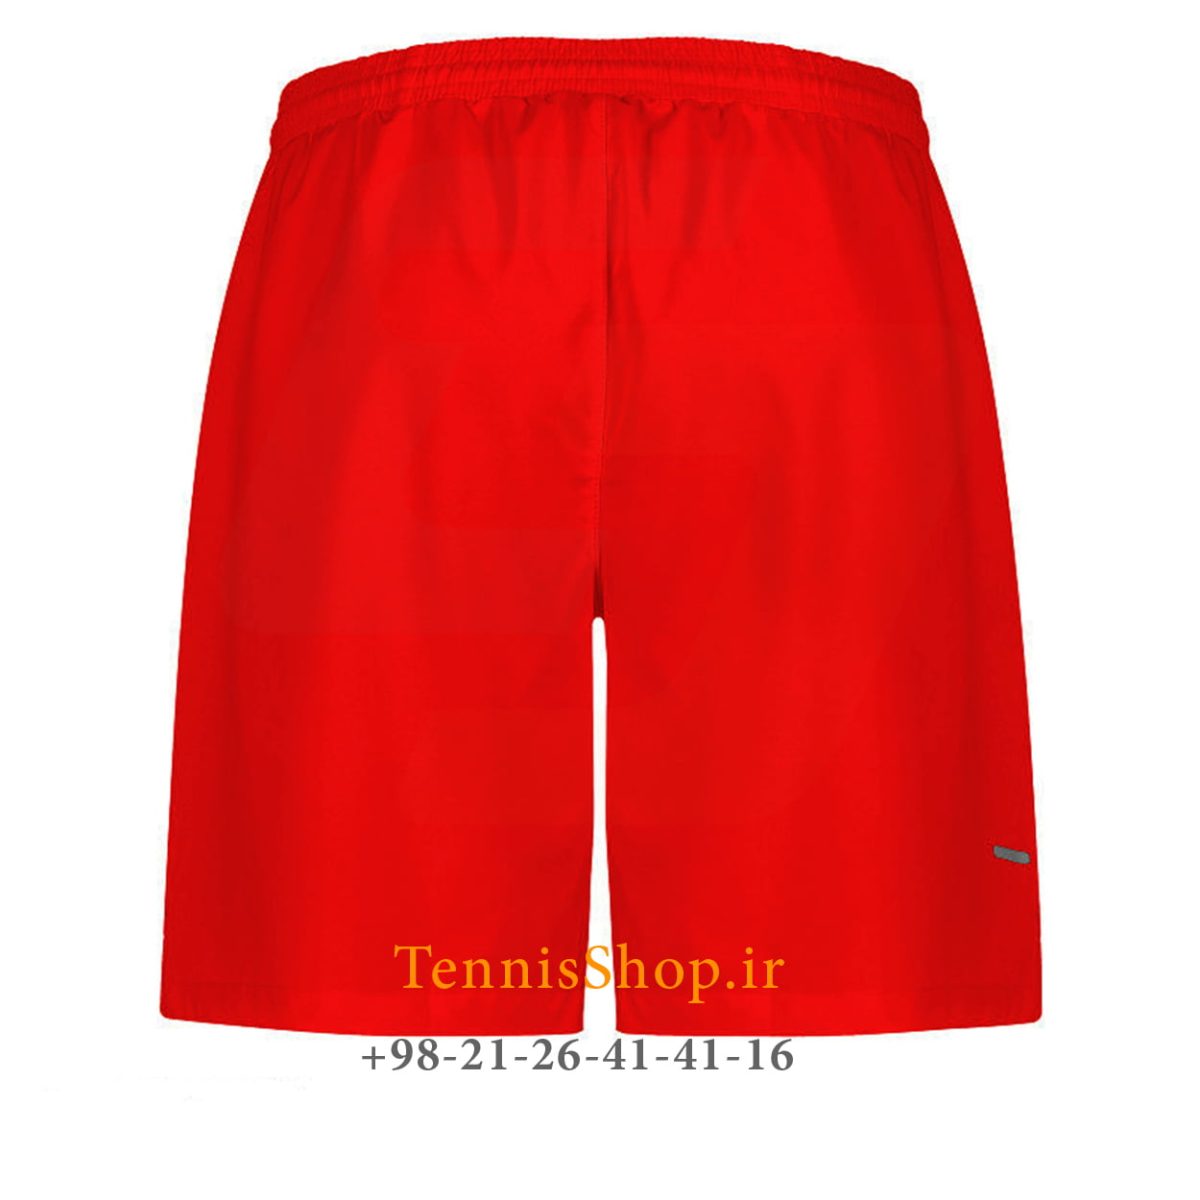 شلوارک تنیس یونی پرو رنگ قرمز